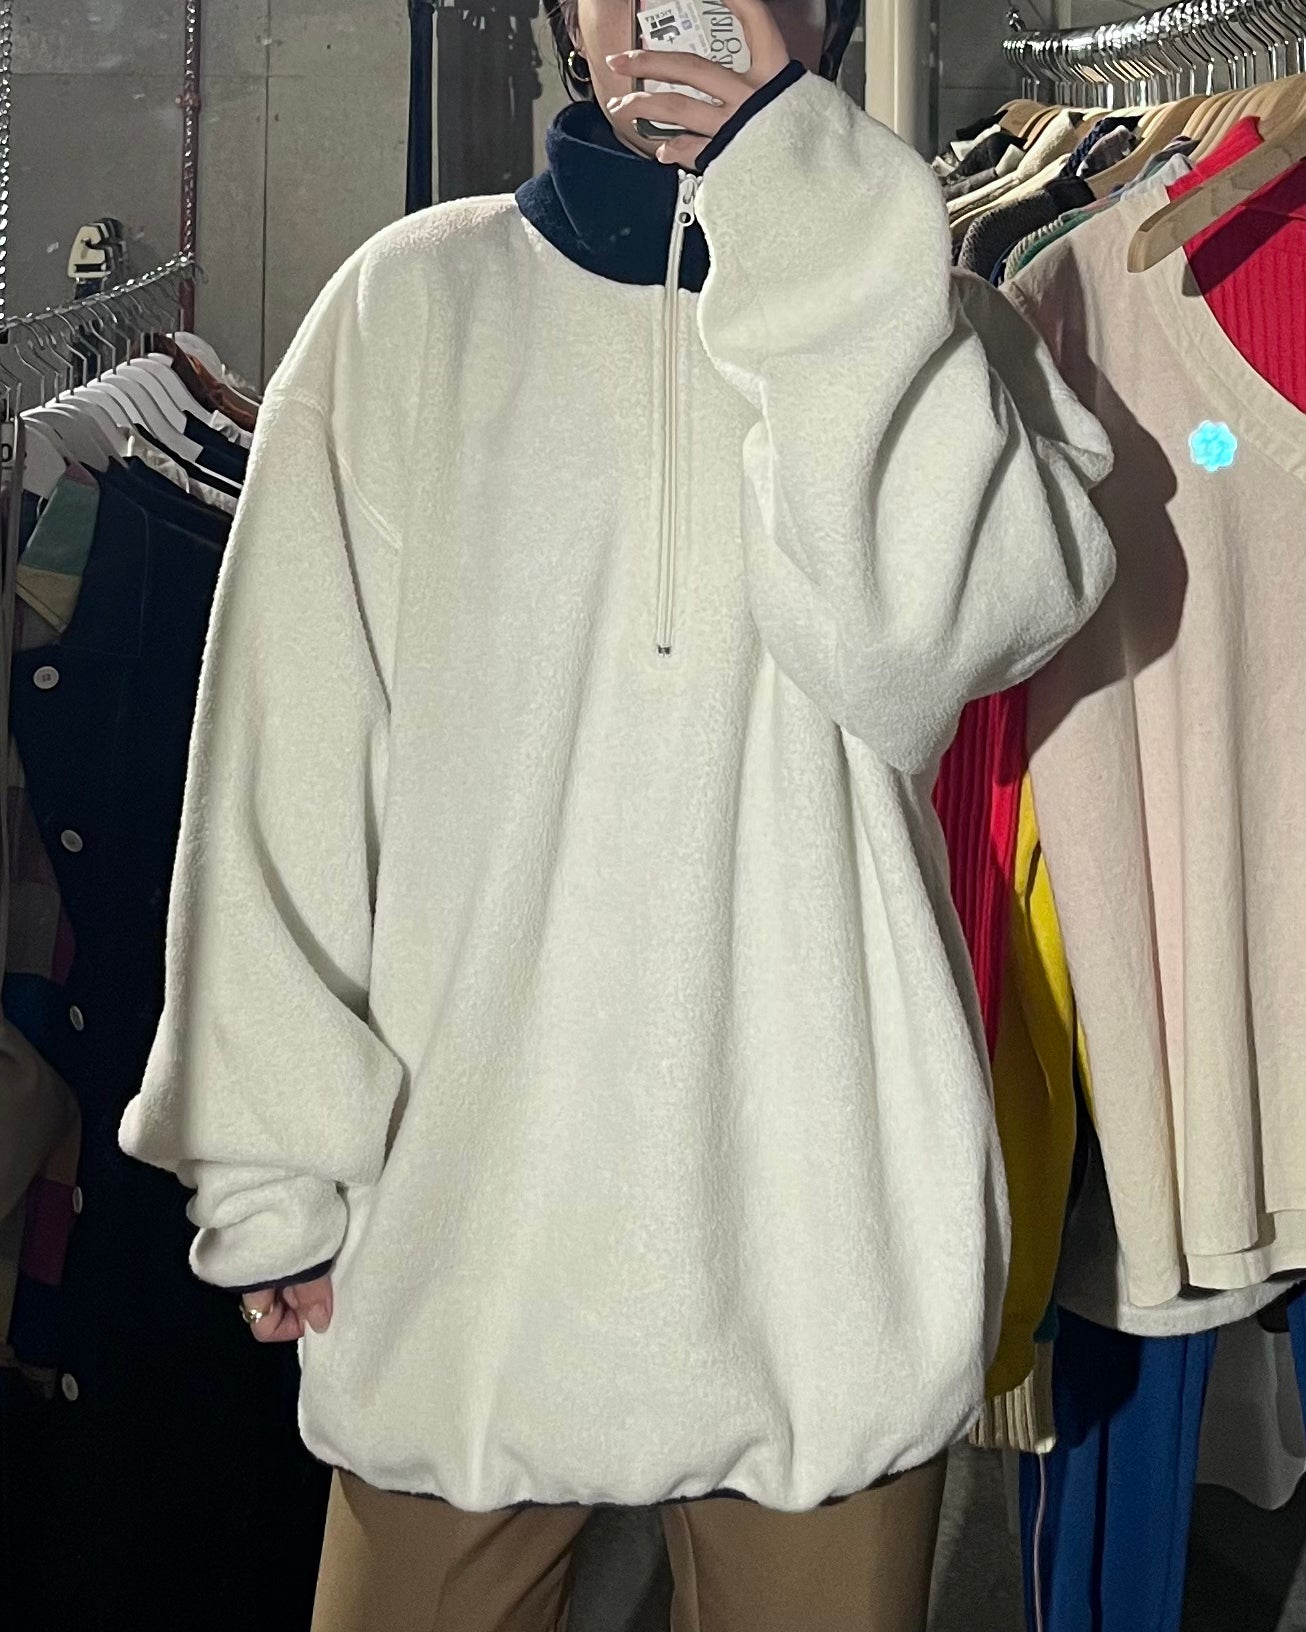 90s Patterned Fleece Zip-Up Pullover